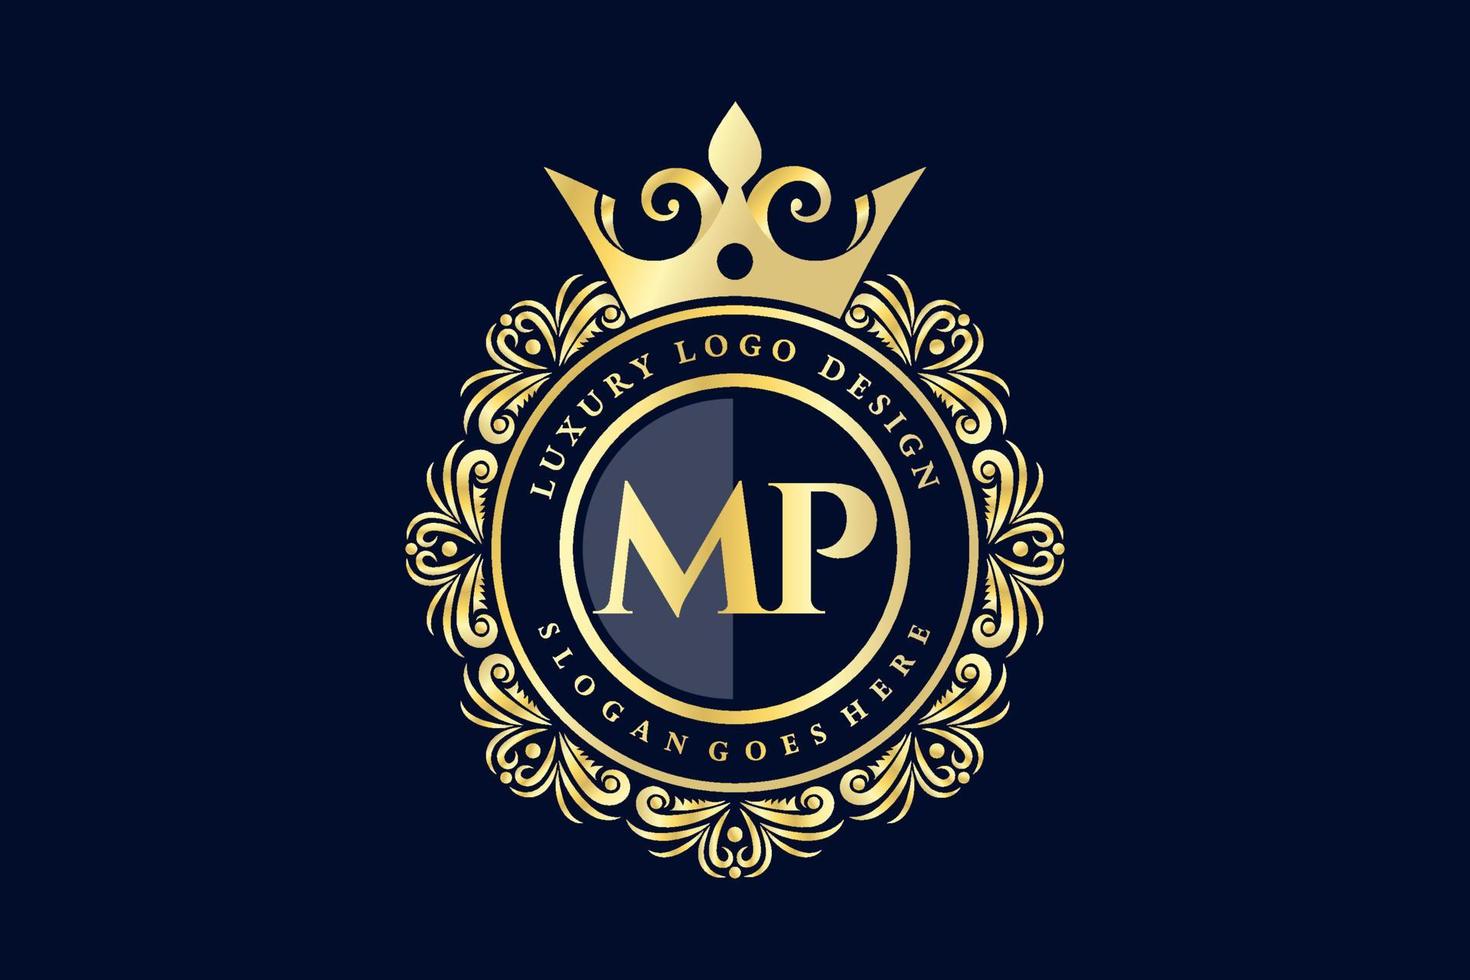 mp letra inicial oro caligráfico femenino floral dibujado a mano monograma heráldico antiguo estilo vintage diseño de logotipo de lujo vector premium